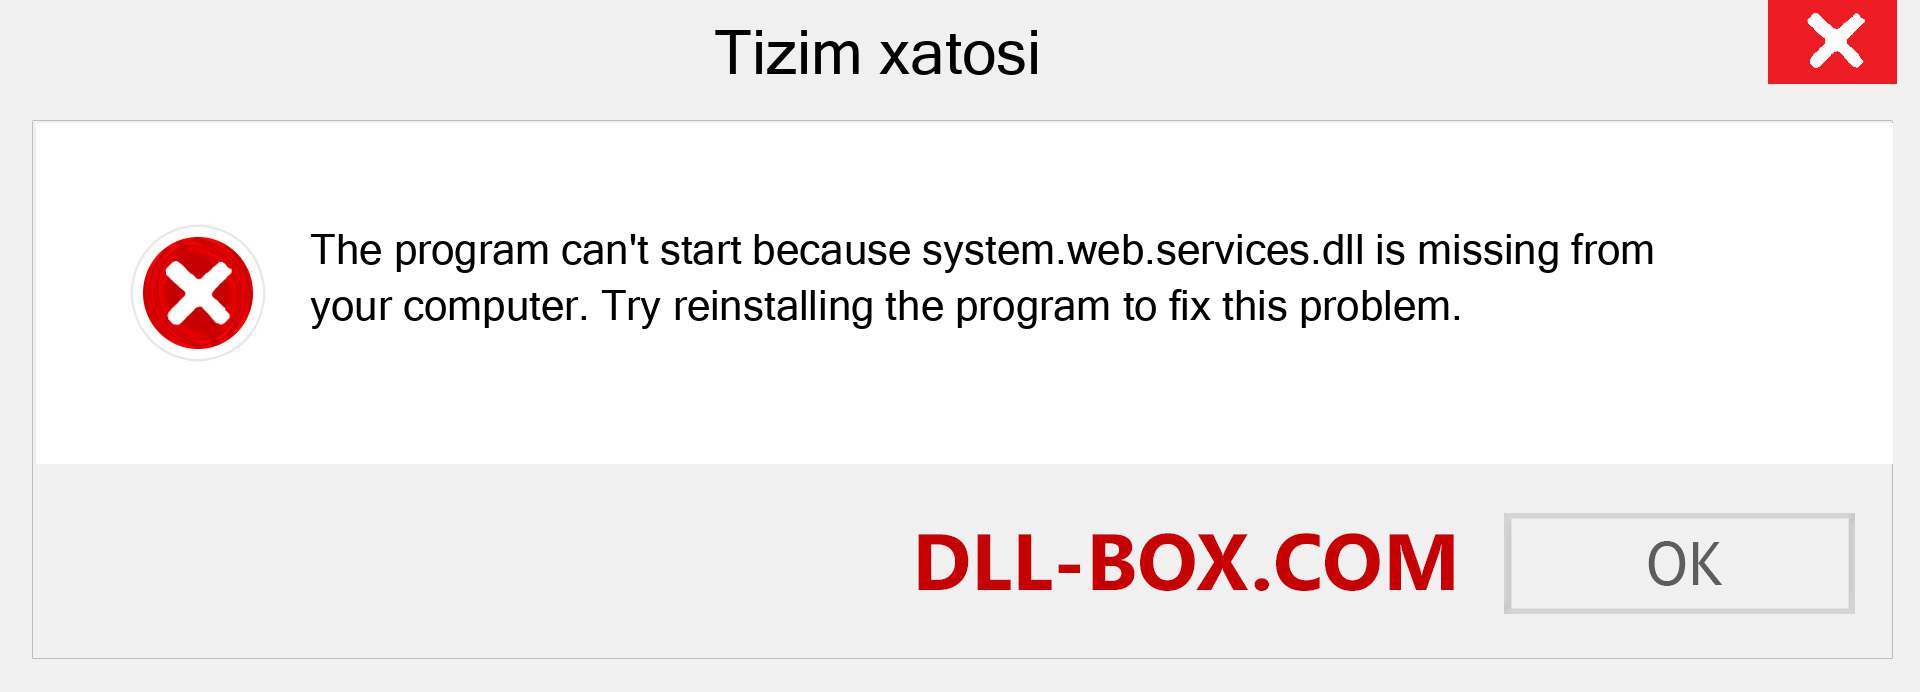 system.web.services.dll fayli yo'qolganmi?. Windows 7, 8, 10 uchun yuklab olish - Windowsda system.web.services dll etishmayotgan xatoni tuzating, rasmlar, rasmlar